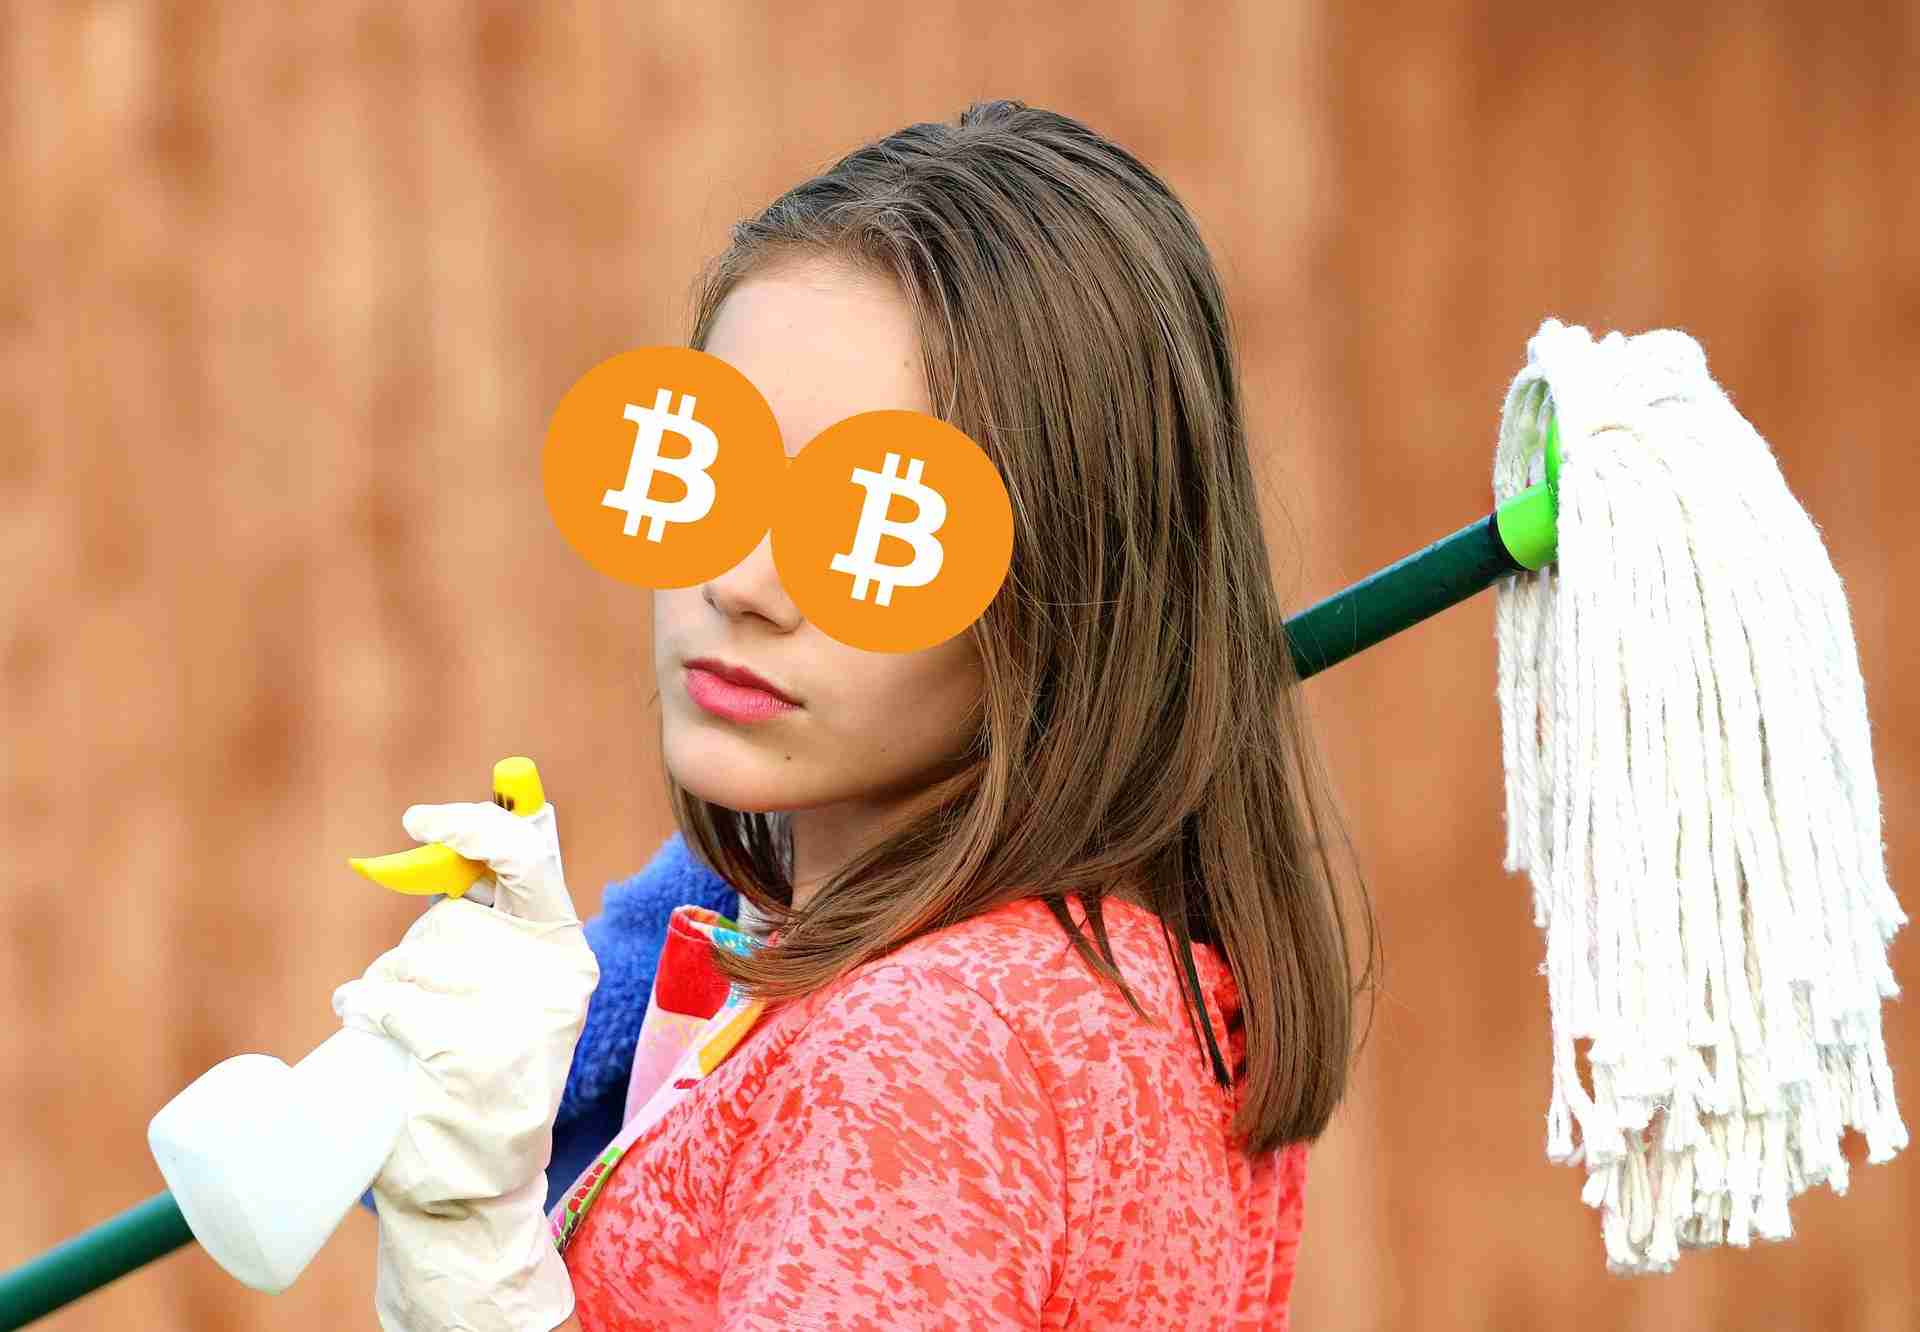 Kobieta w okularach Bitcoin, przygotowująca się do sprzątania. Trzyma mopa i spryskiwacz.